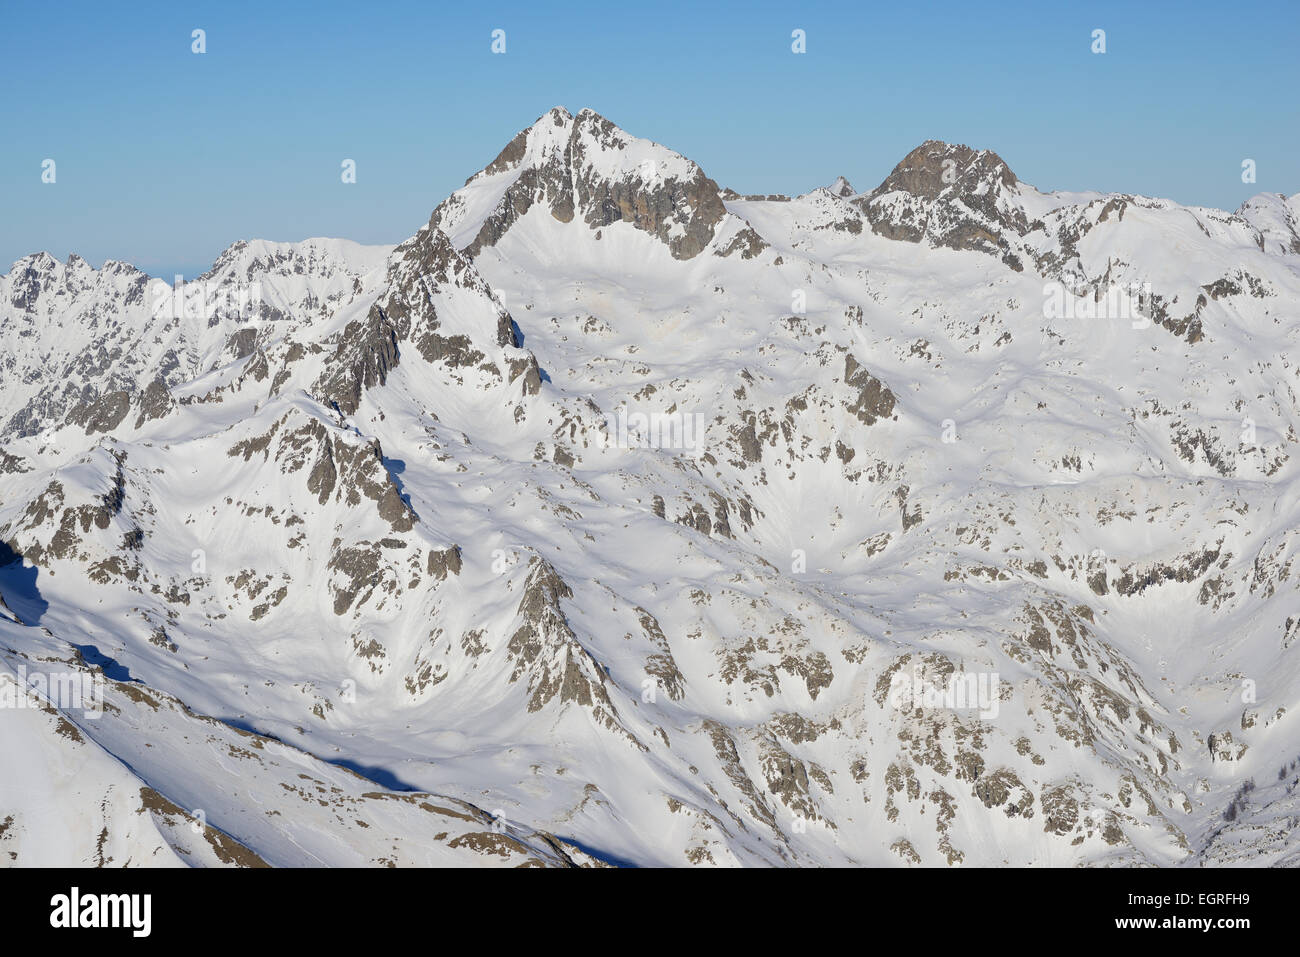 VISTA AEREA. Gelas picco in inverno, questa è la cima più alta delle Alpi Marittime (altitudine: 3143m). Saint-Martin-Vésubie, Francia. Foto Stock